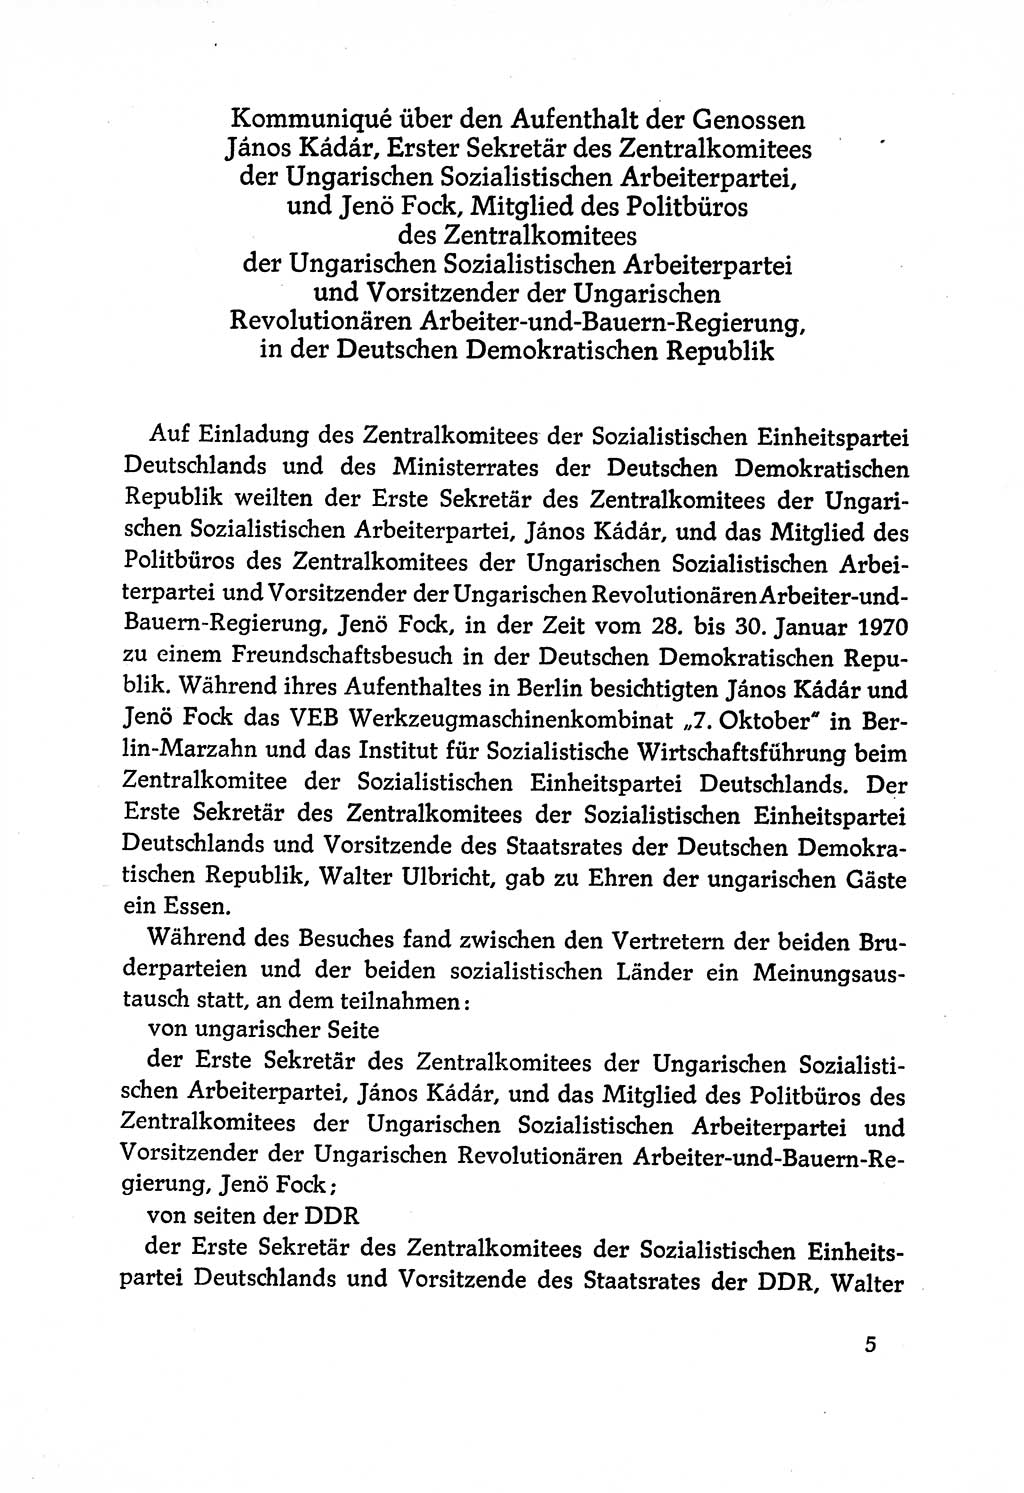 Dokumente der Sozialistischen Einheitspartei Deutschlands (SED) [Deutsche Demokratische Republik (DDR)] 1970-1971, Seite 5 (Dok. SED DDR 1970-1971, S. 5)